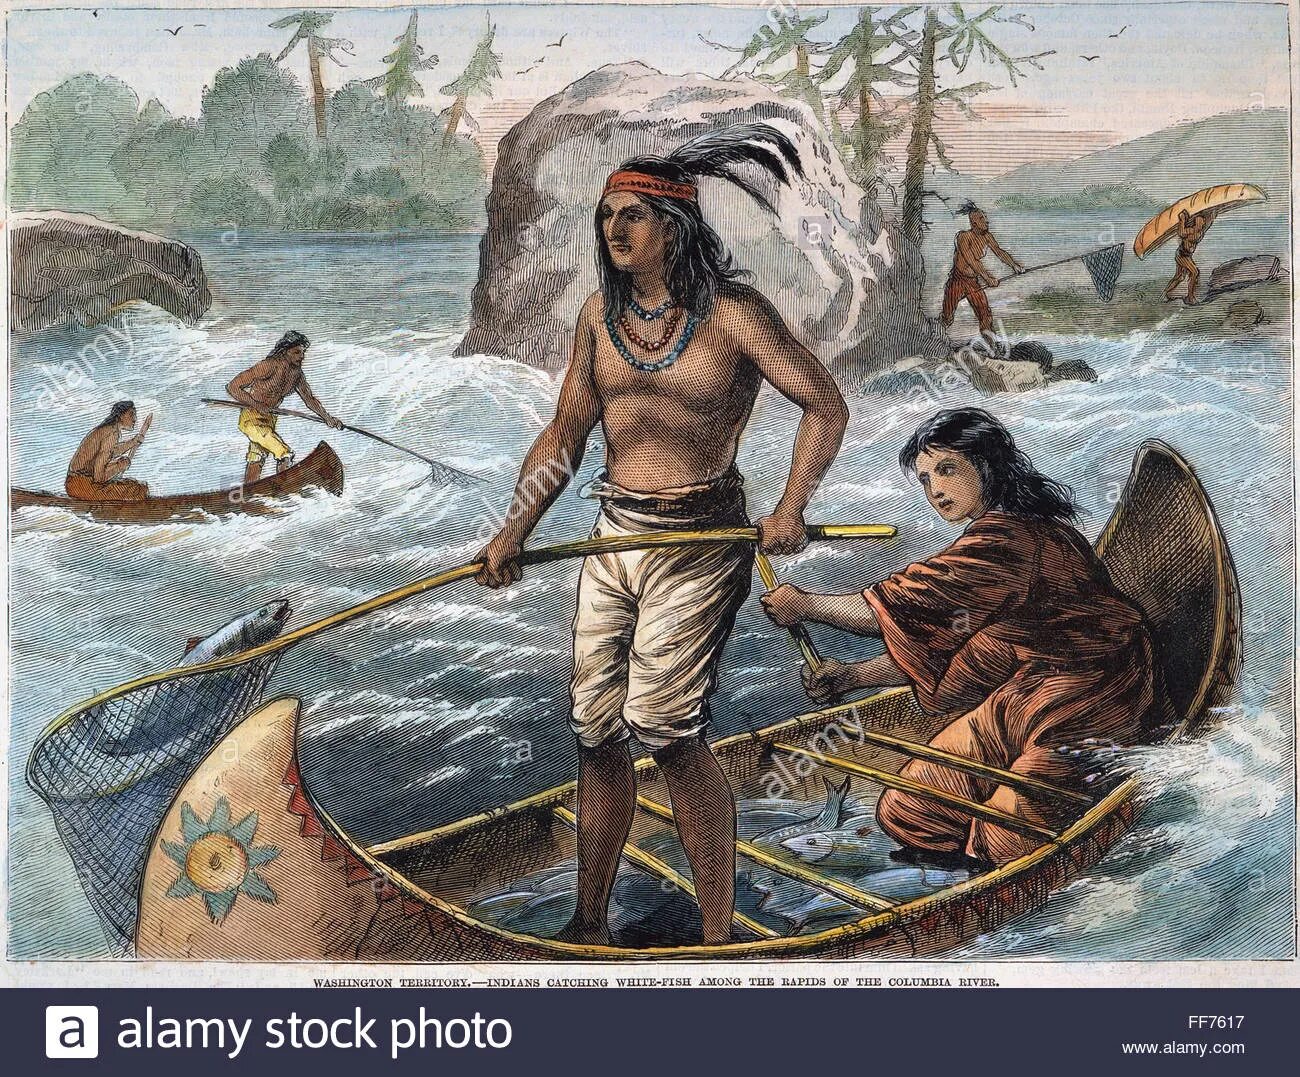 С давних времен в человеческом. Древние каноэ полинезийцев. Индейцы вампаноаги. Североамериканские индейцы до Колумба. Лодки индейцев Южной Америки.